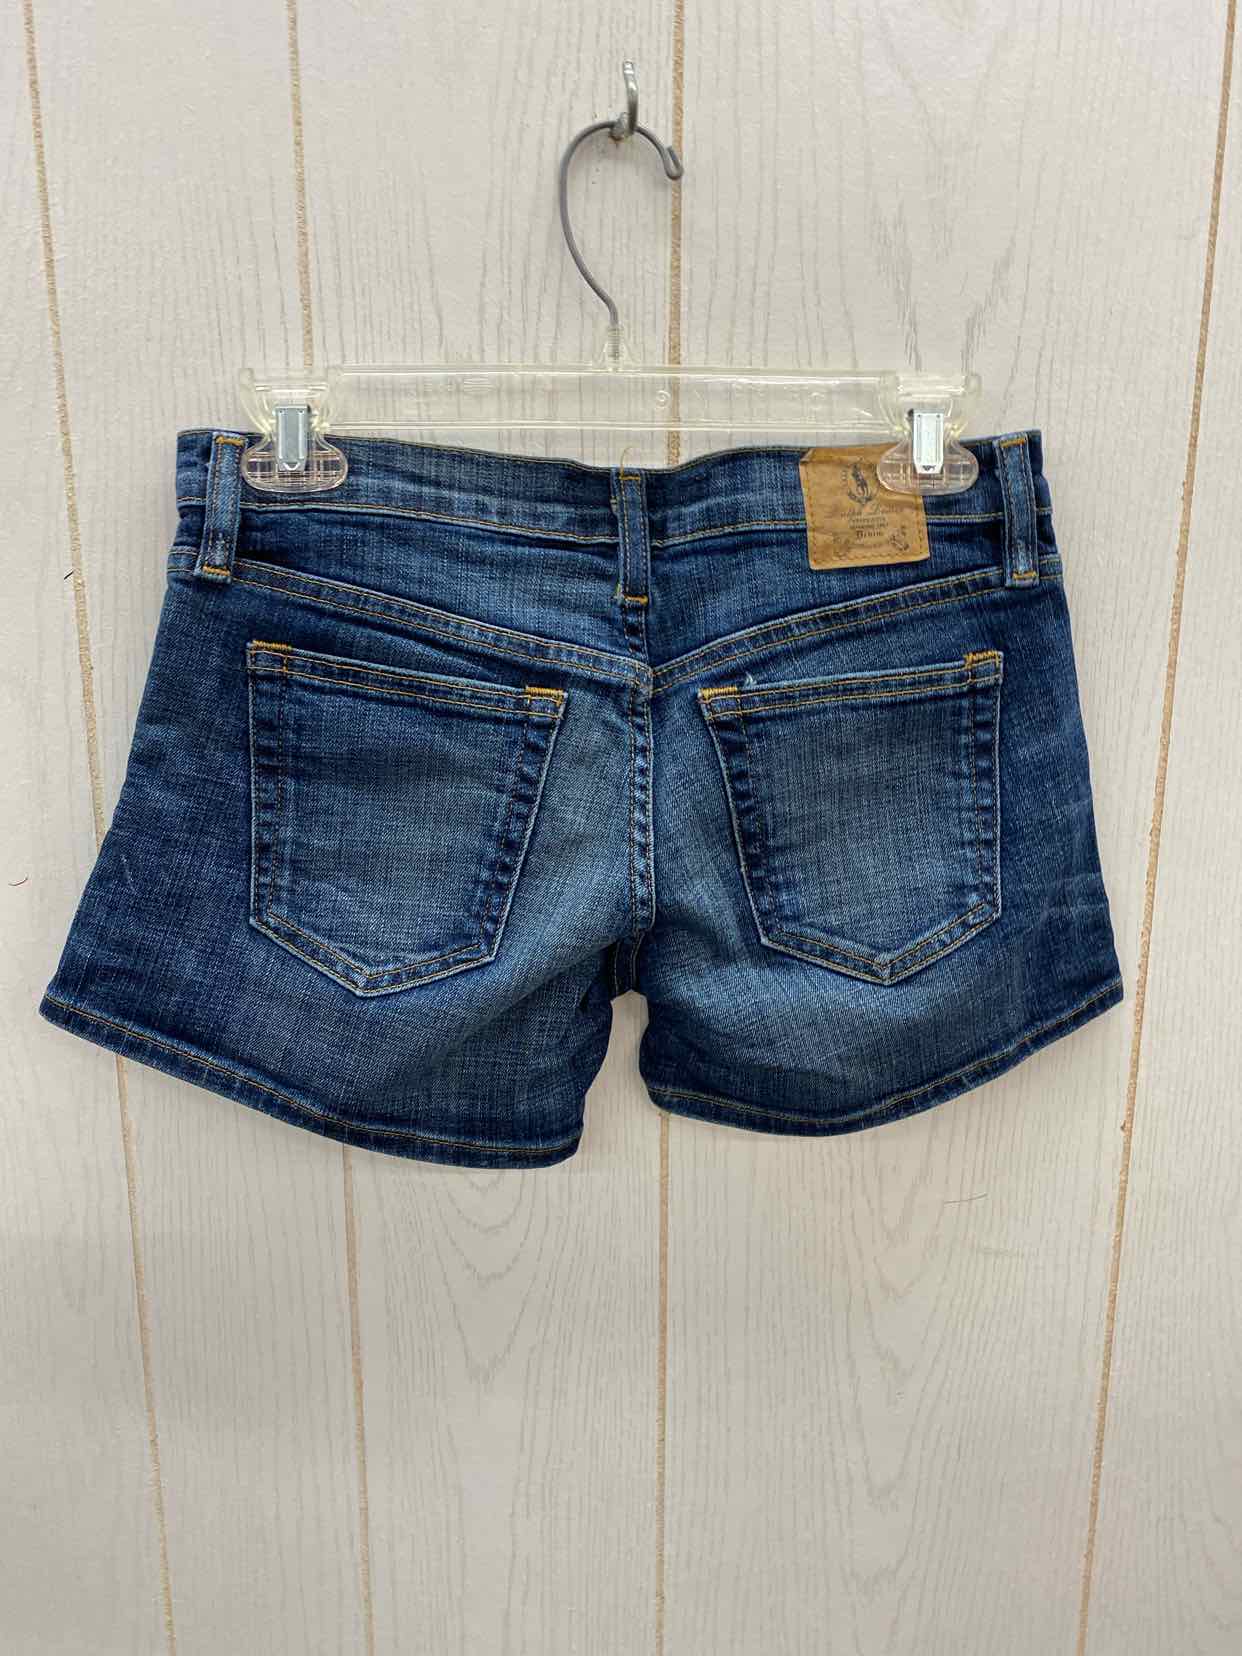 Ralph Lauren Blue Womens Size 1/2 Shorts